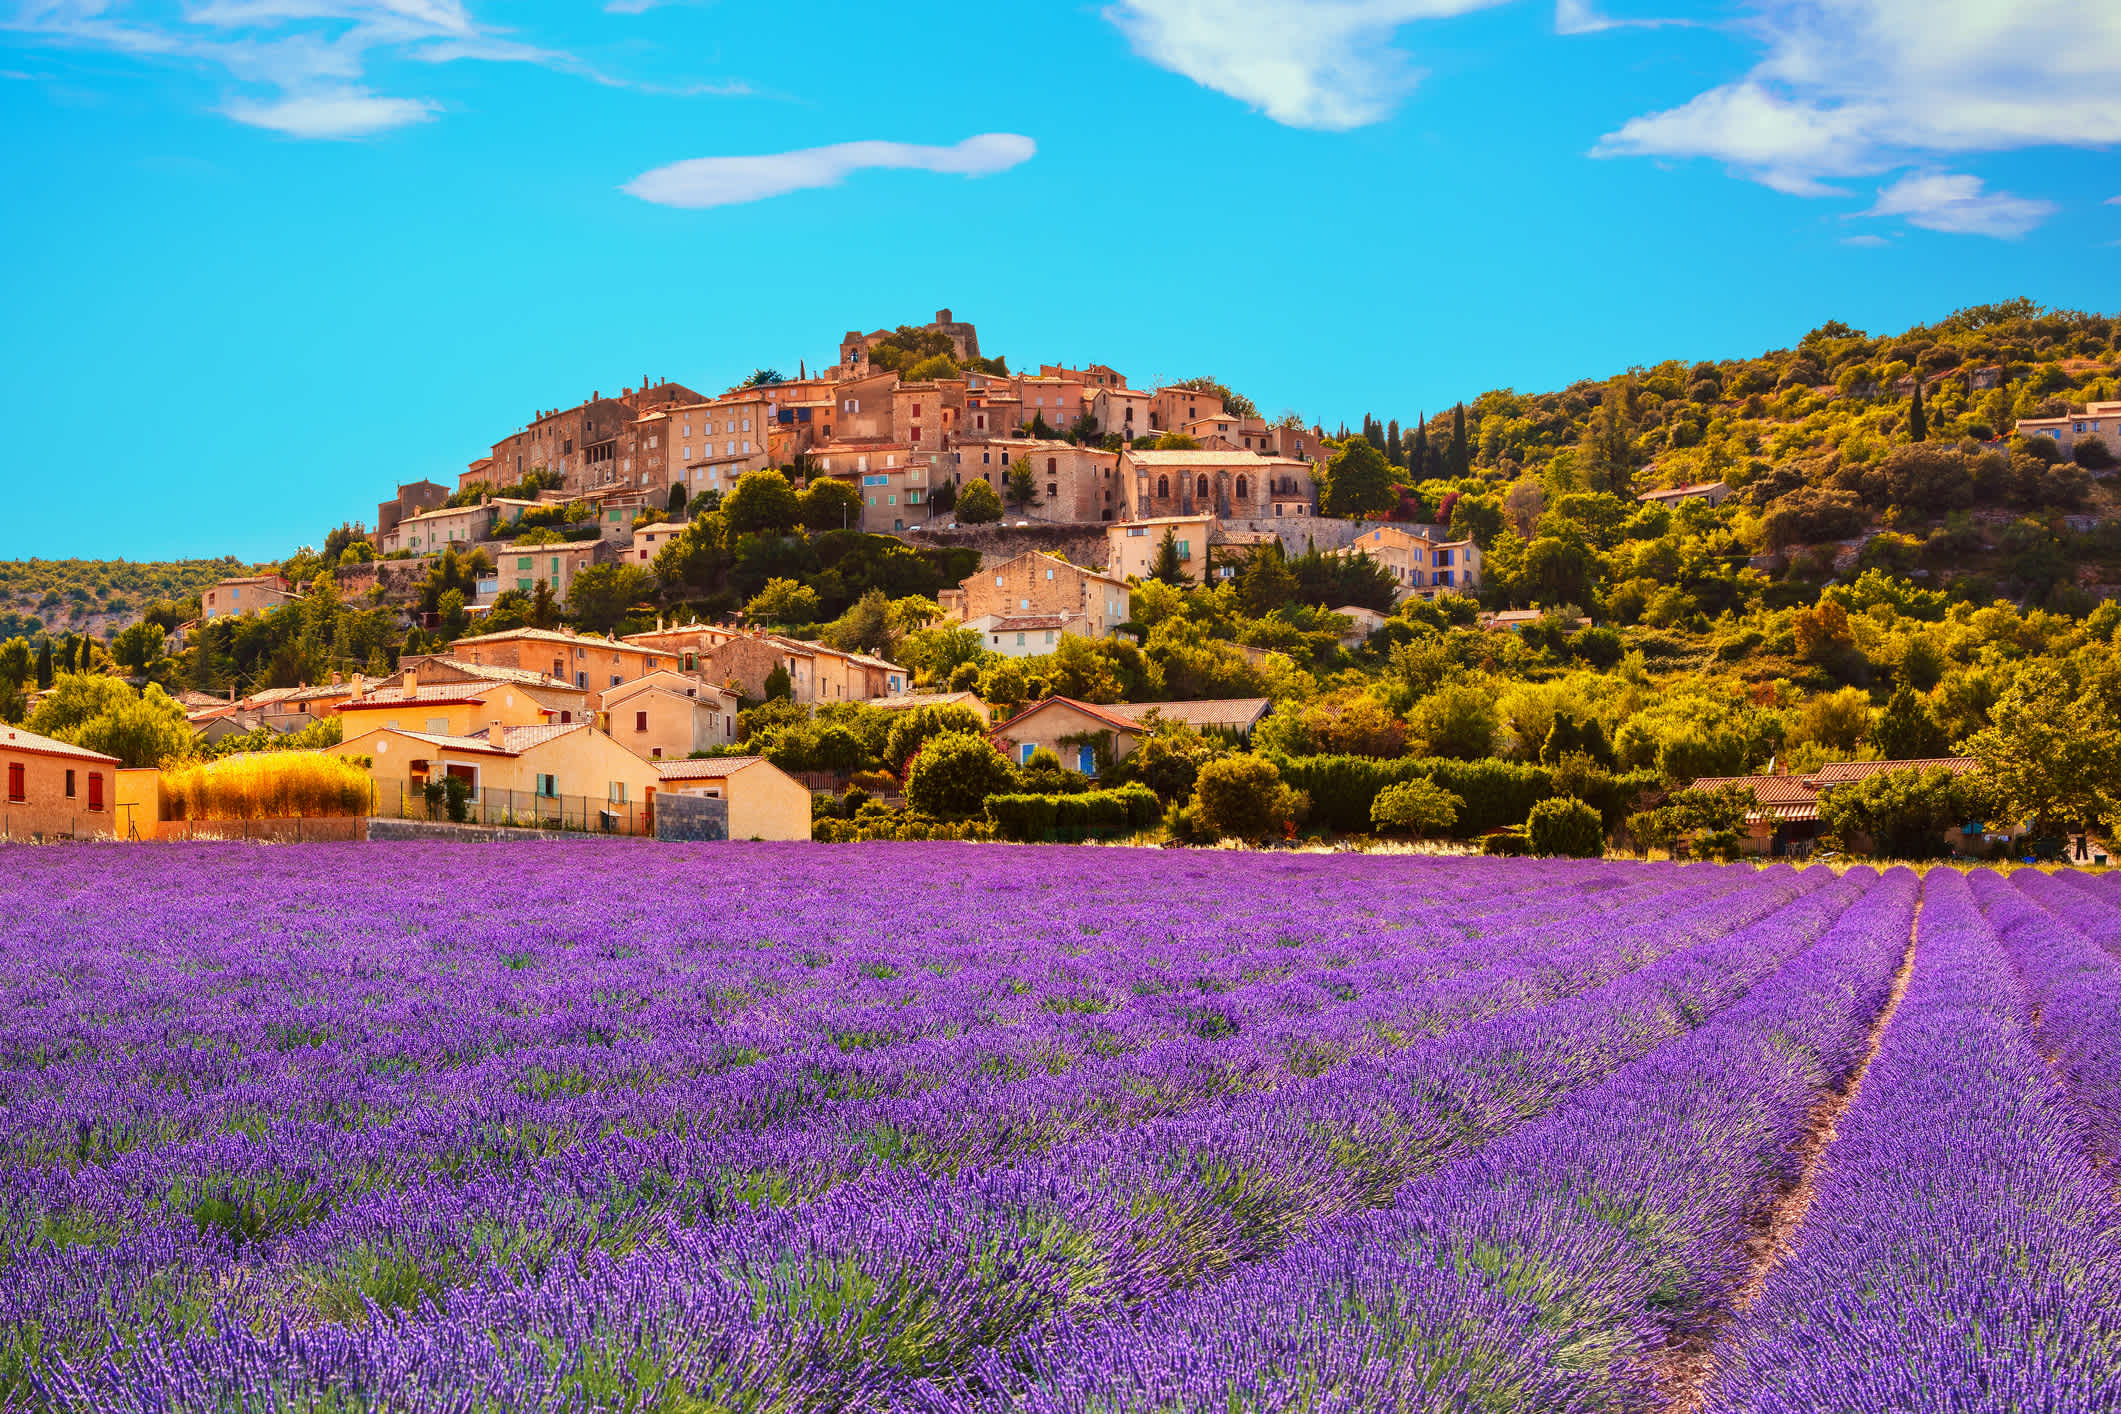 Admirez les paysages typiques de la région pendant vos vacances en Provence.